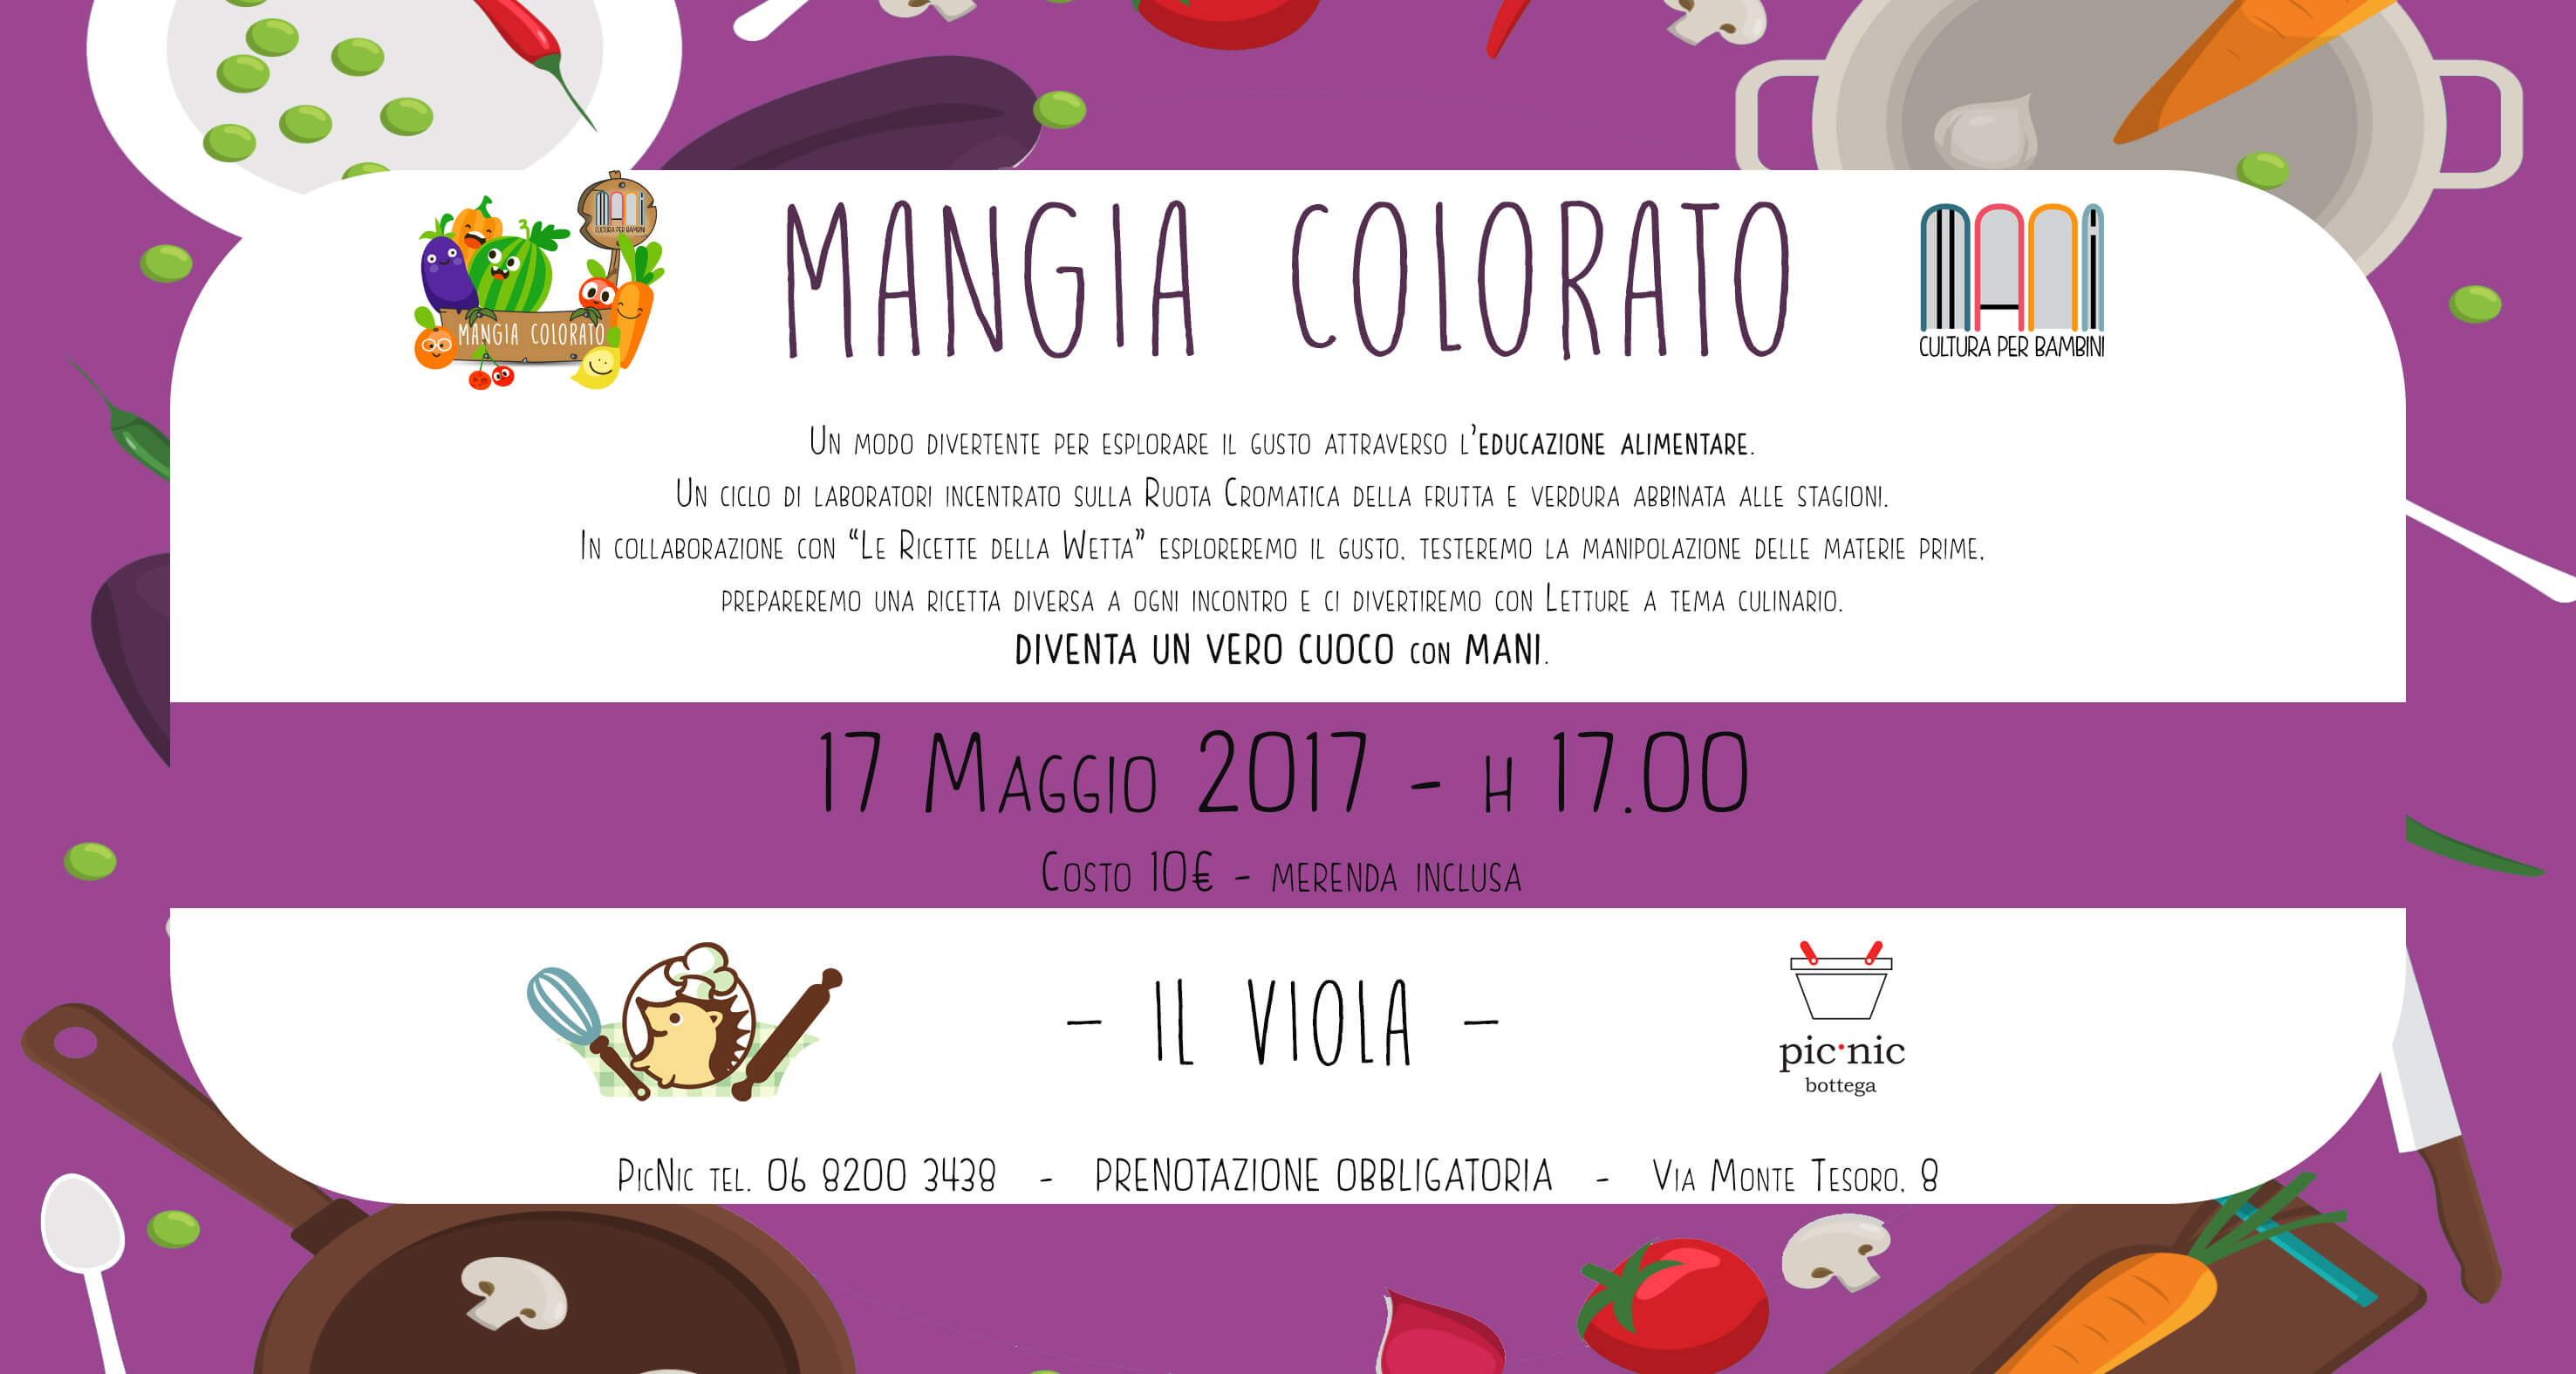 Mangia colorato Mani - invito viola - eventi per bambini